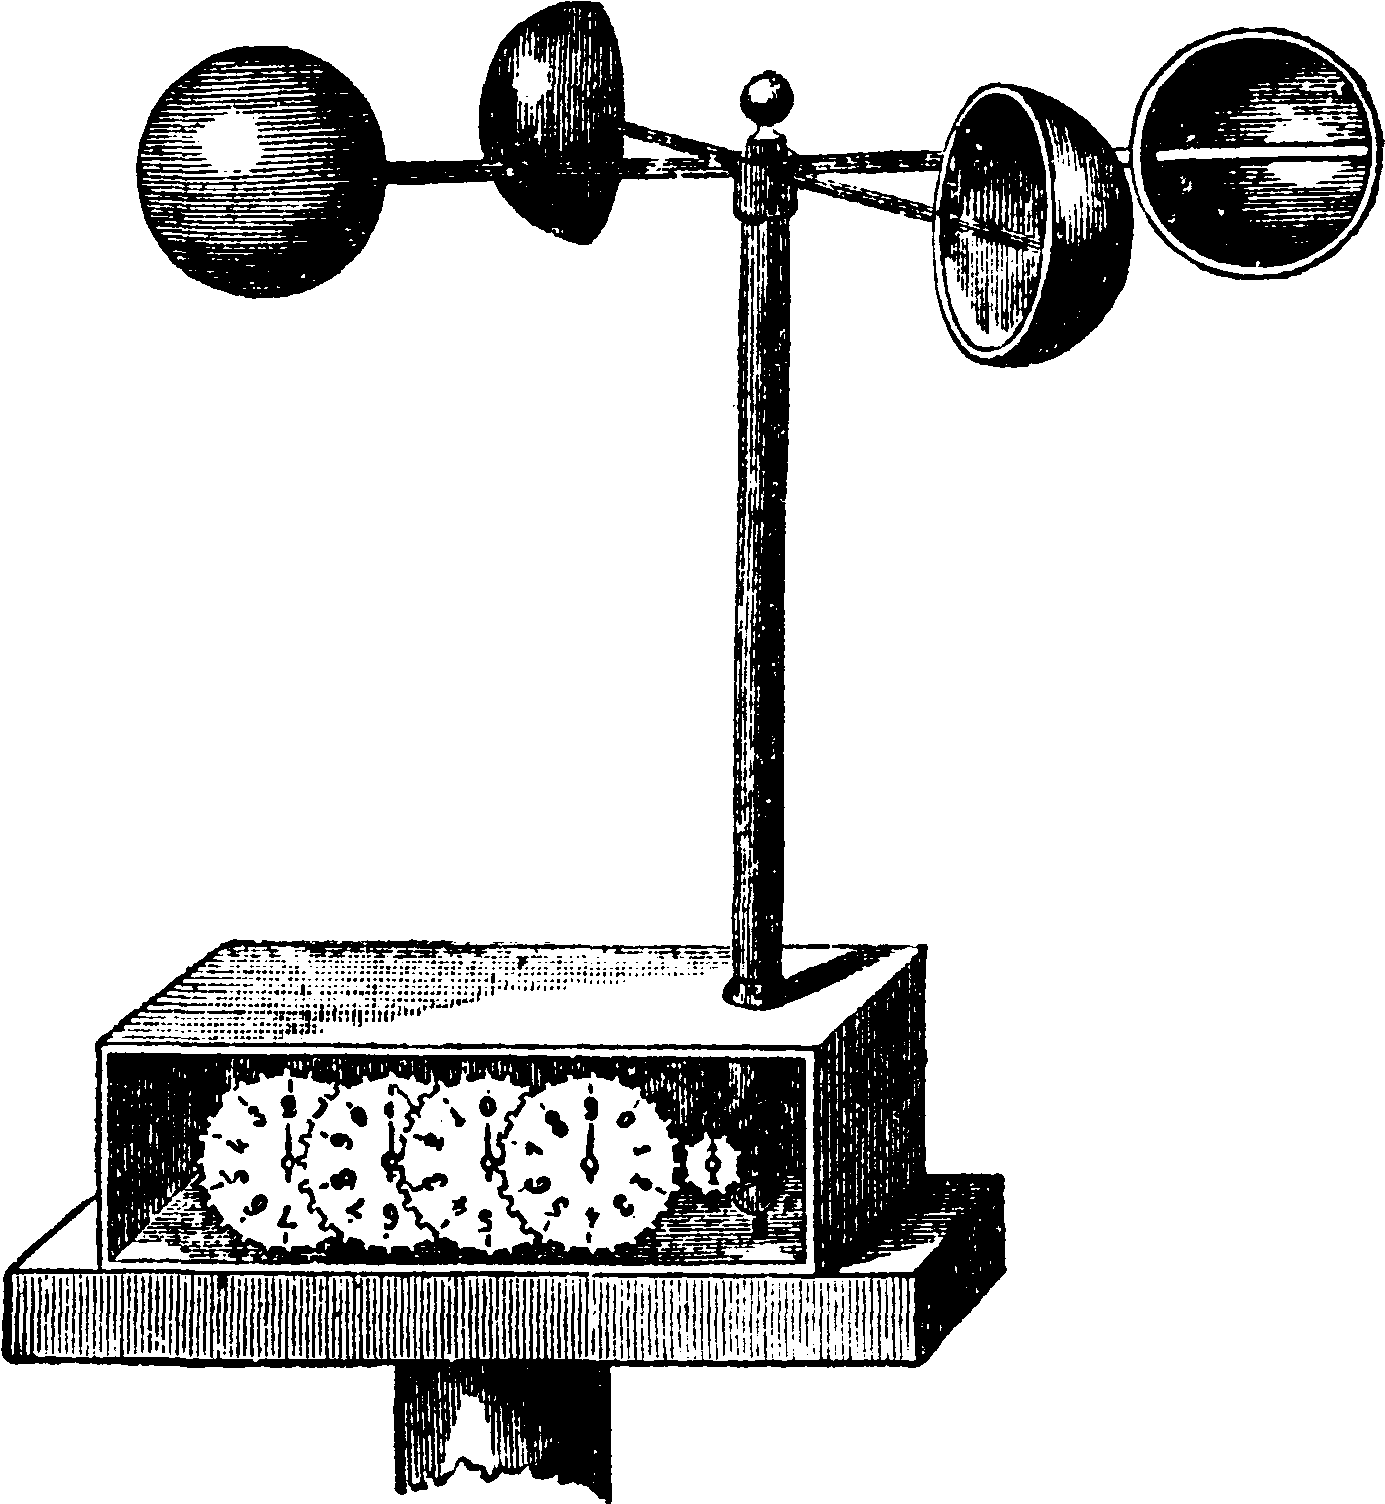 Fileanemometer, Robinsonsk, Nordisk Familjebok - Black Anemometer (1420x1552)